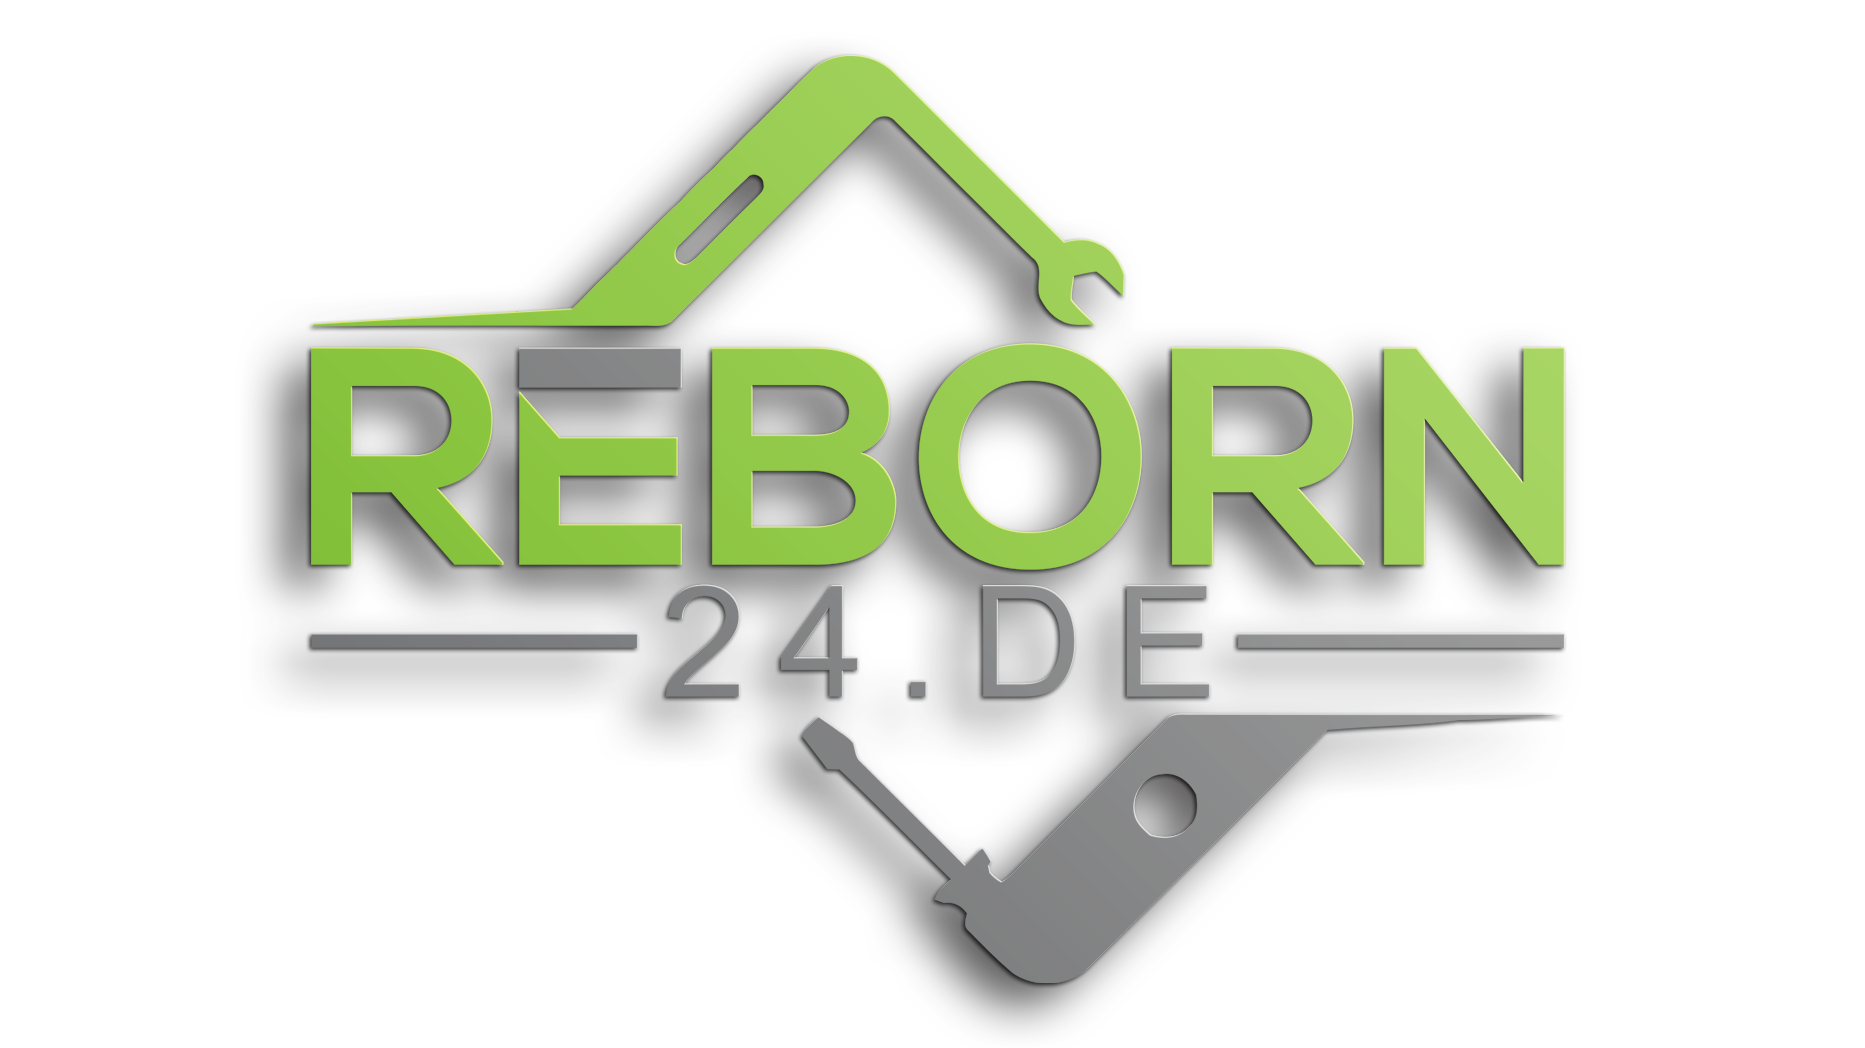 Reborn24.de